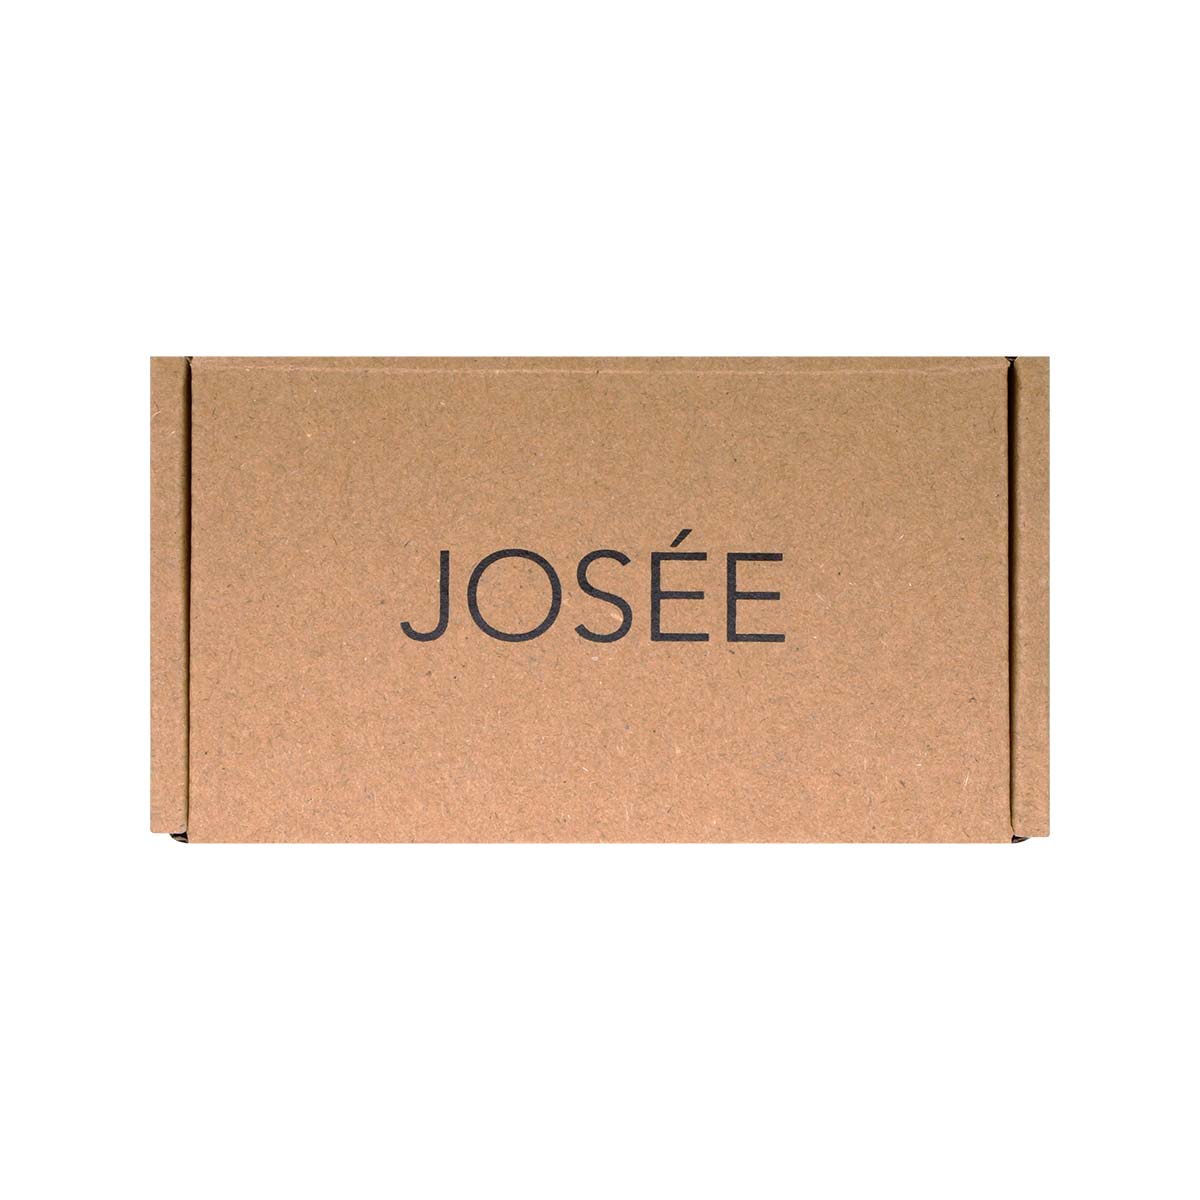 JOSEE (ジョセー) ホワイトローズ アロマキャンドル 70g-p_2